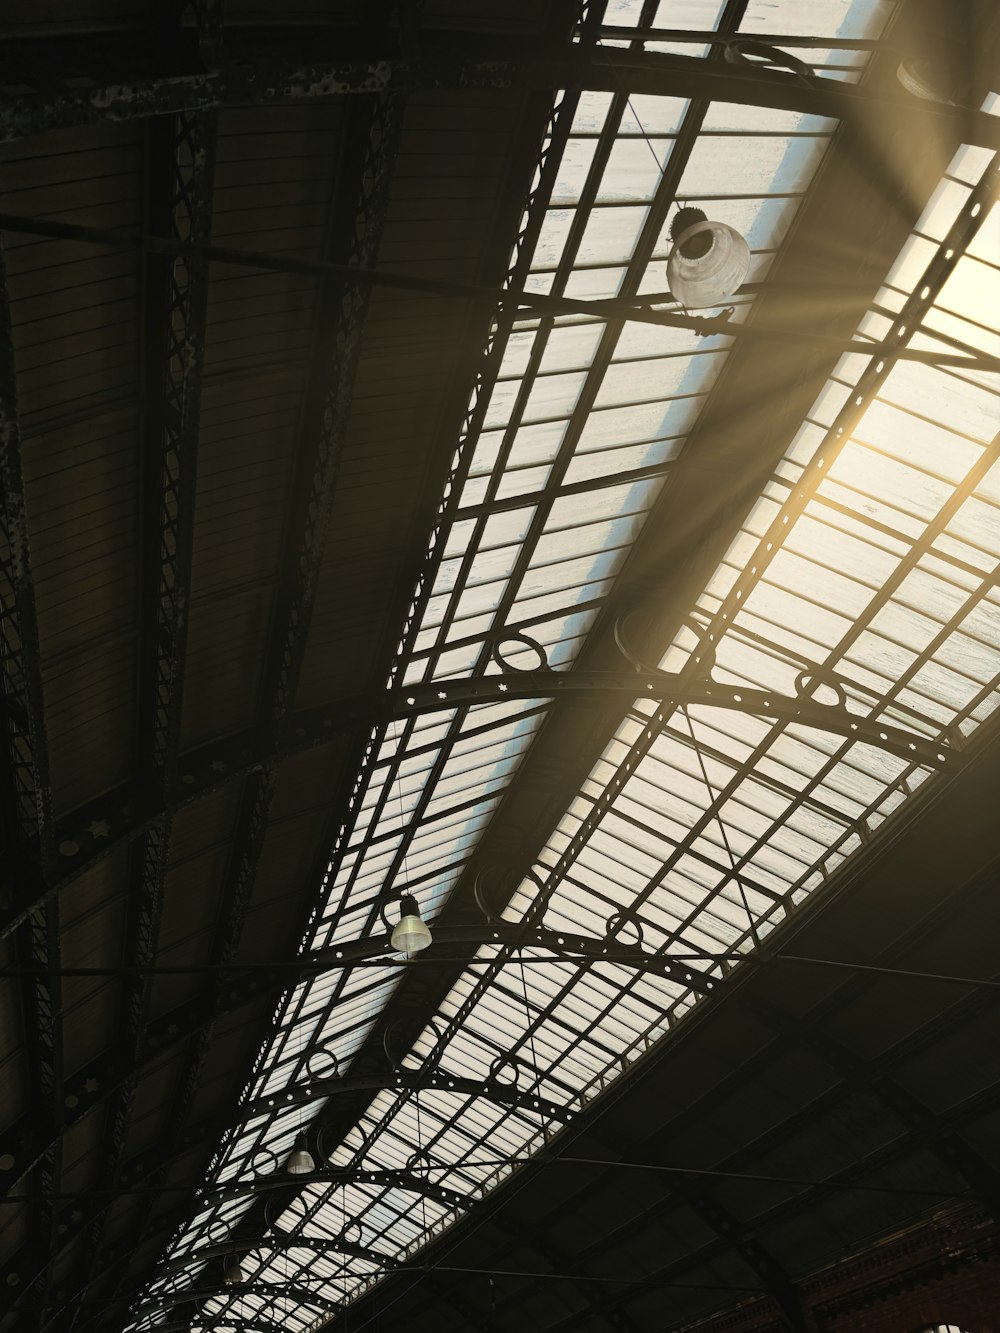 Le soleil brille à travers le toit d’une gare